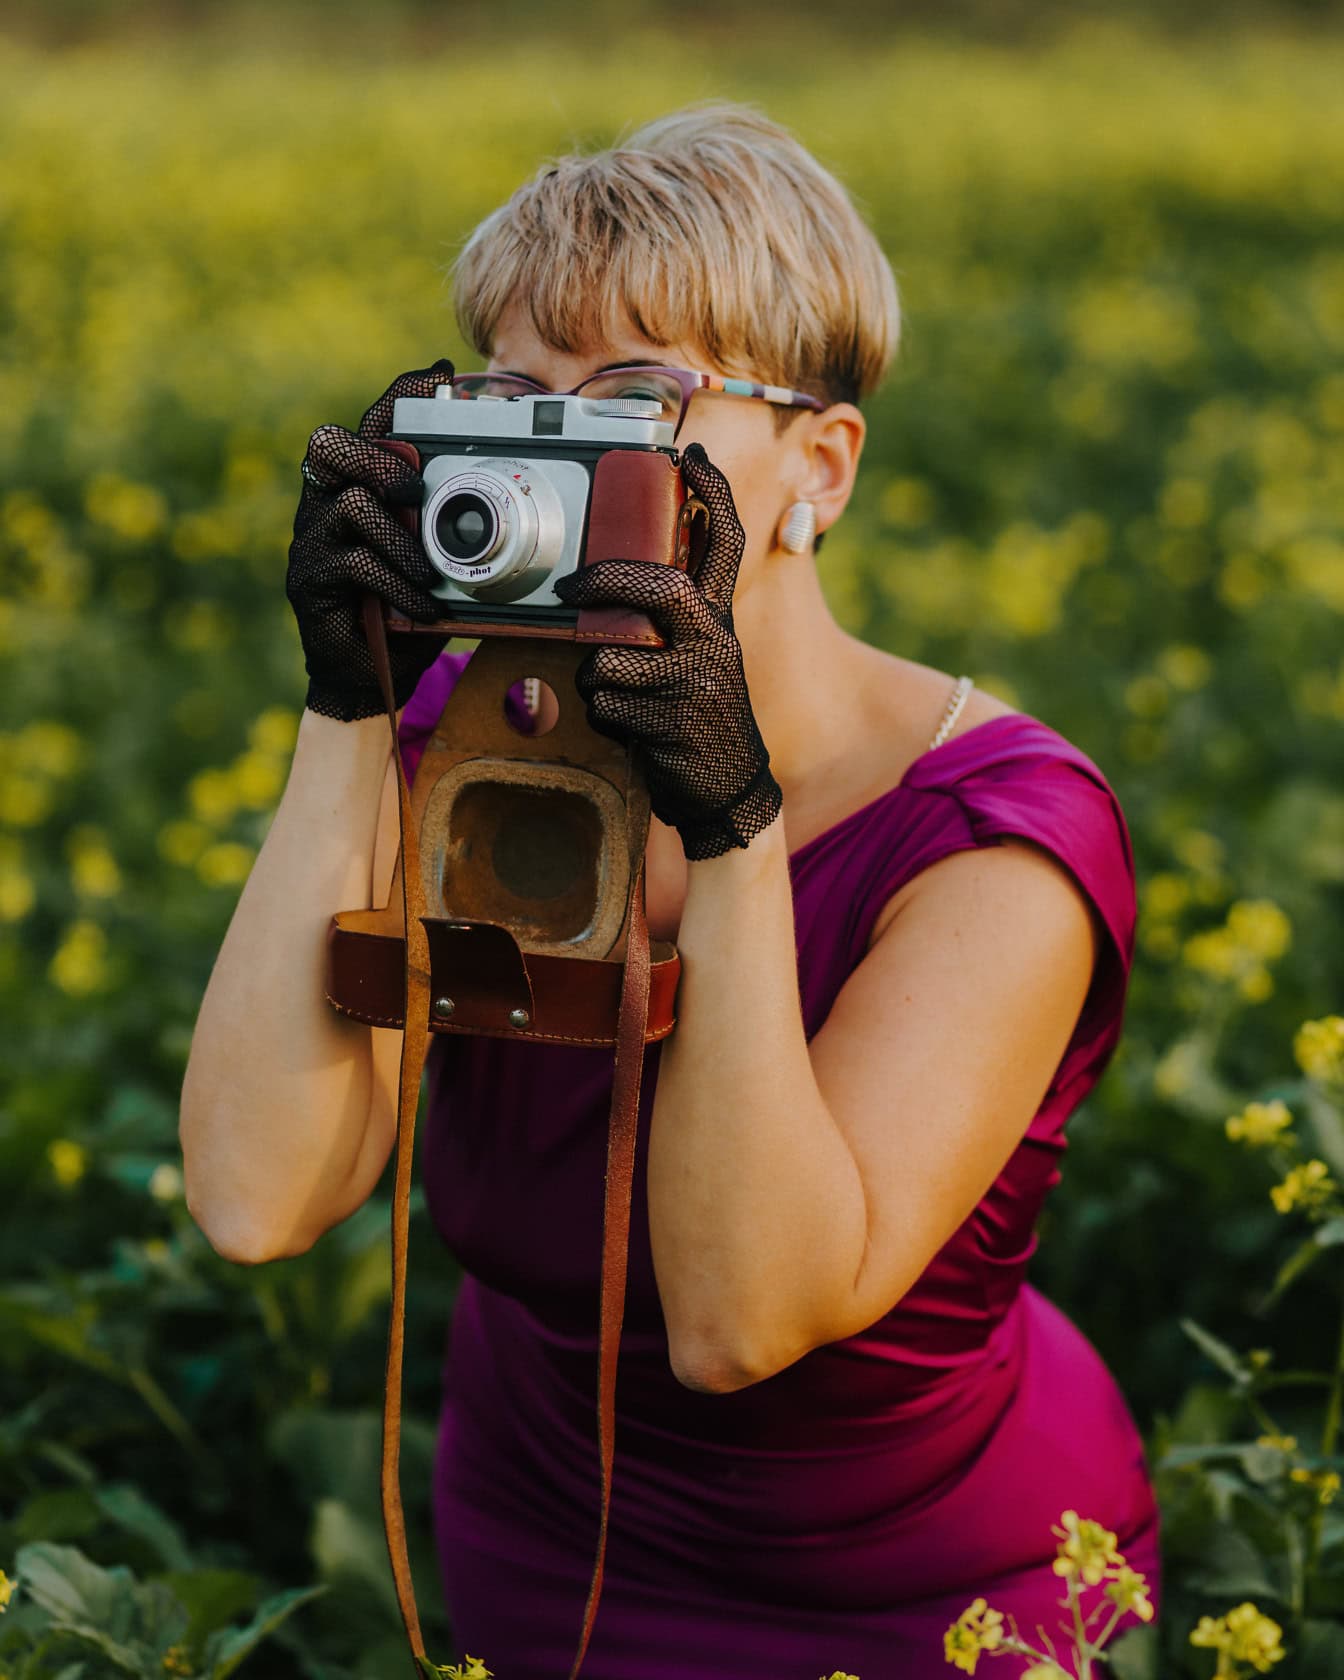 Očarujúca dáma fotografka s krátkym blond účesom vo fialových šatách pri fotografovaní analógovým fotoaparátom